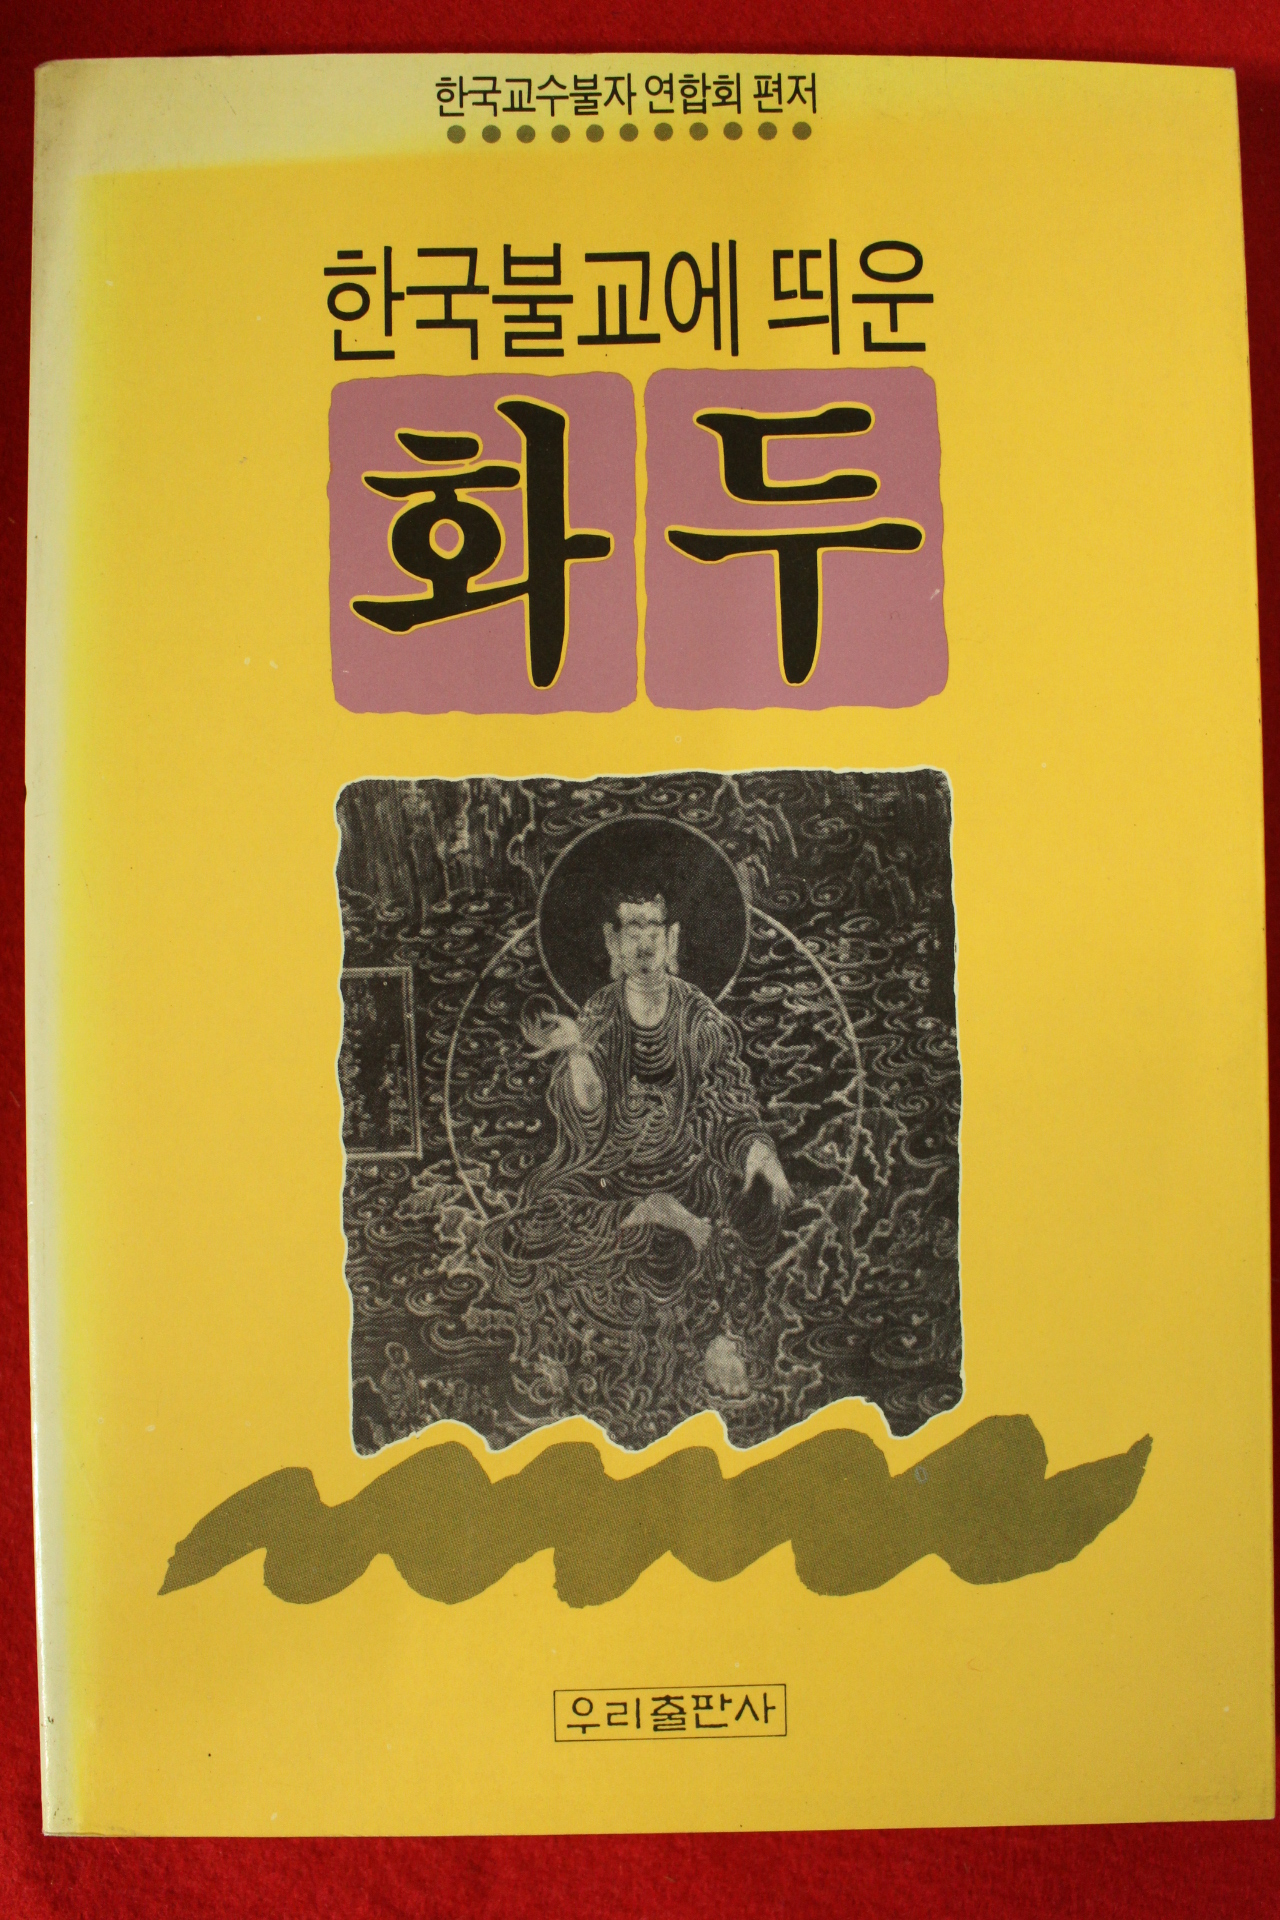 1990년초판 한국불교에 띄운 화두